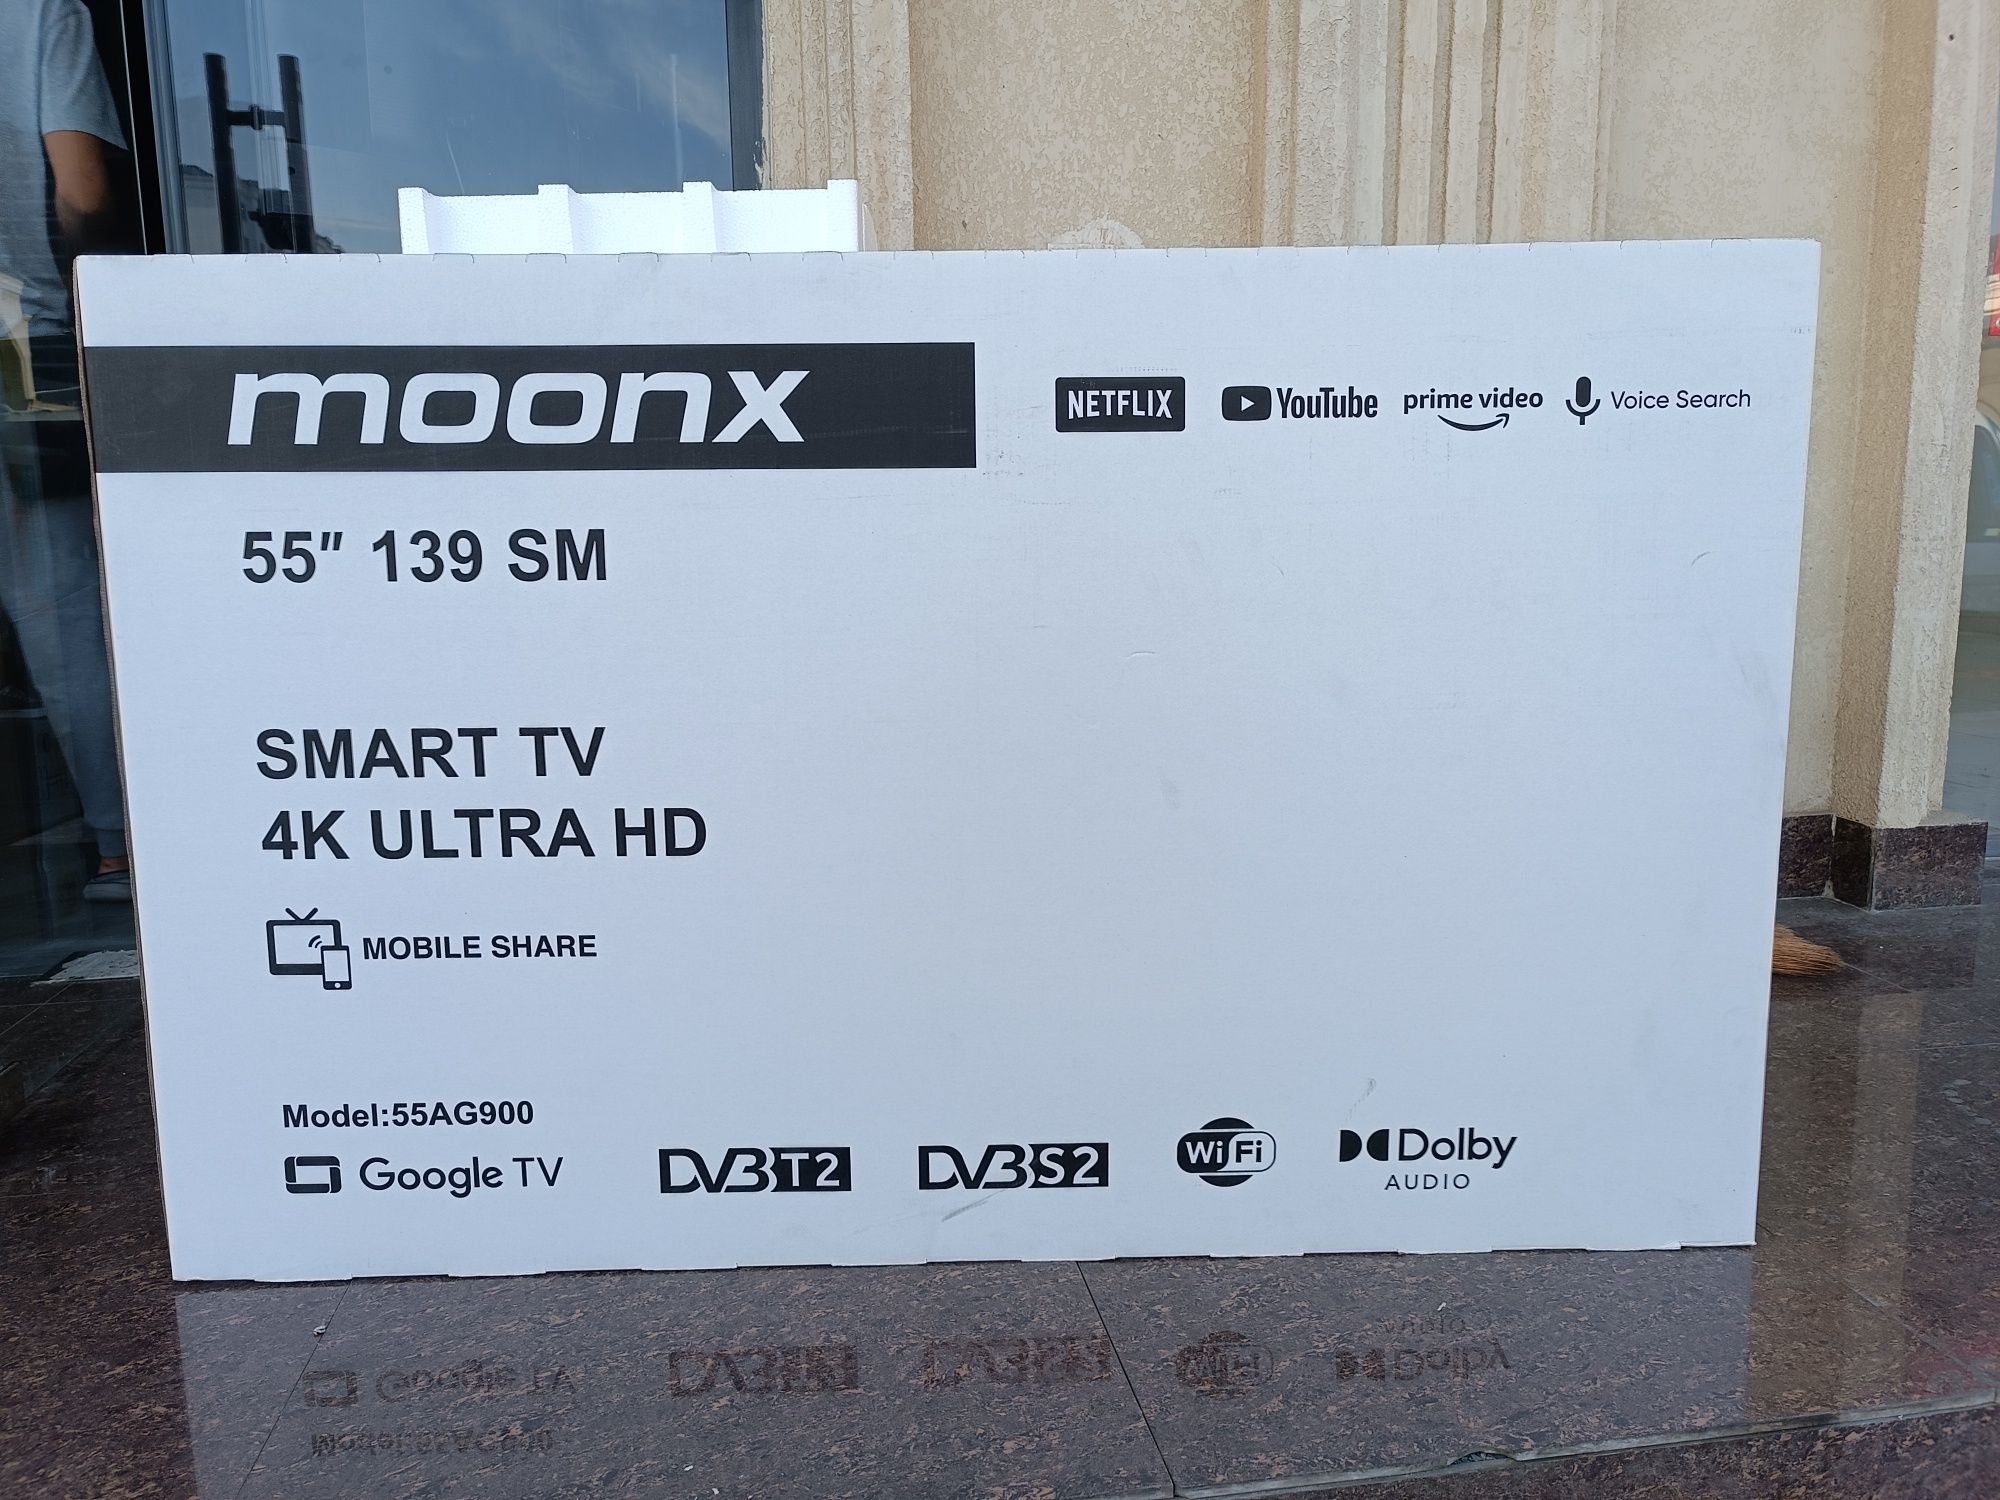 Smart TV Moonx 55 прошивка доставка по городу РАССРОЧКА ИМЕЕТСЯ